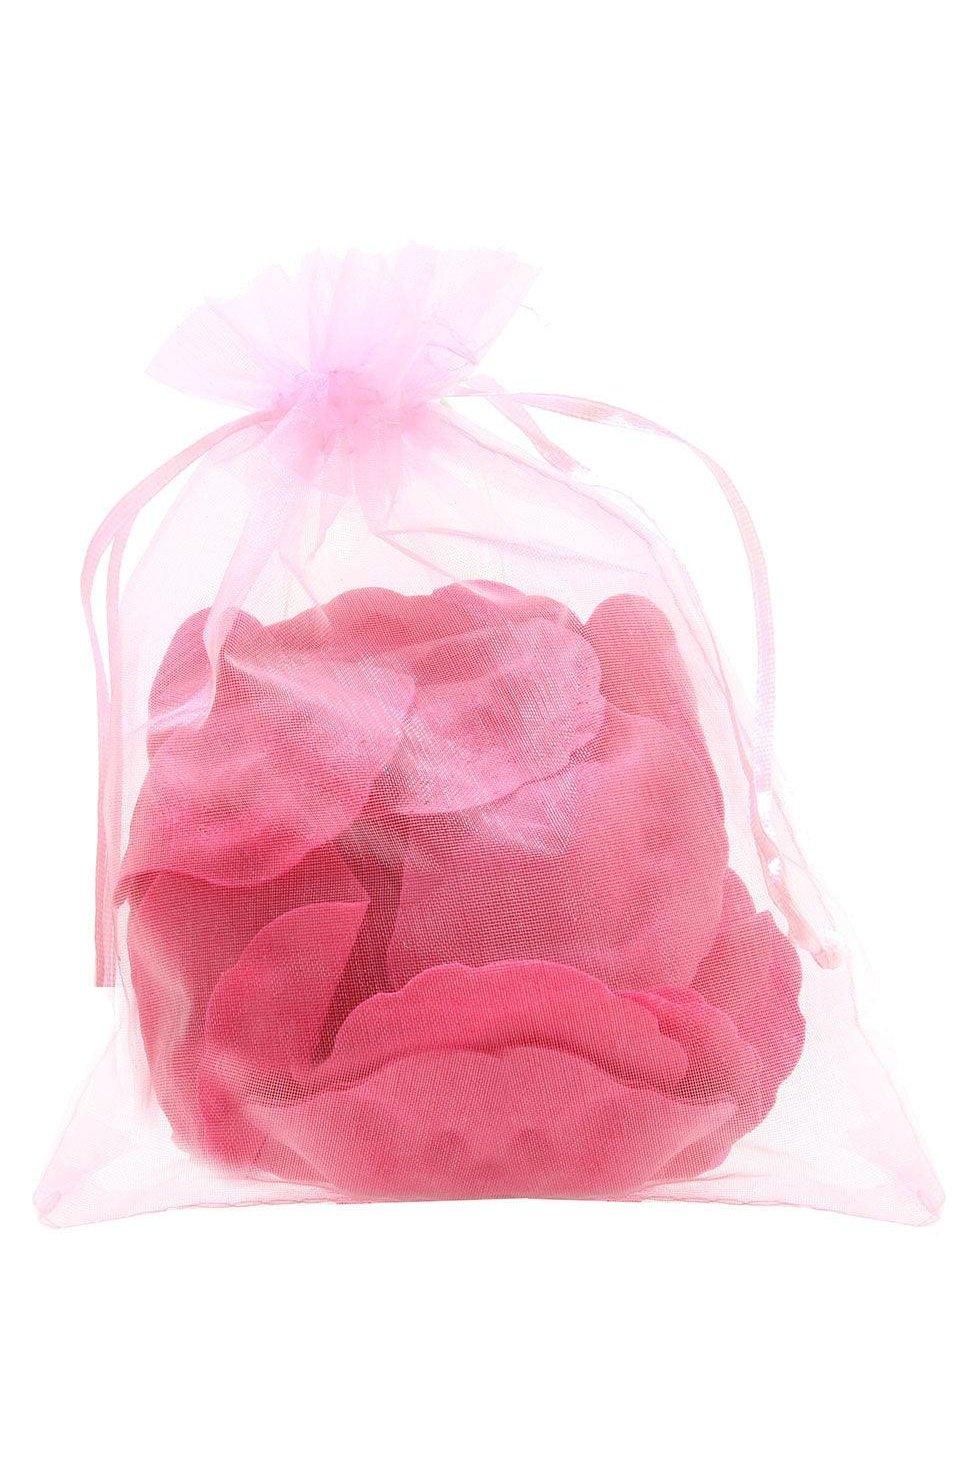 Melting Rose Petals - Solé Resale Boutique thrift